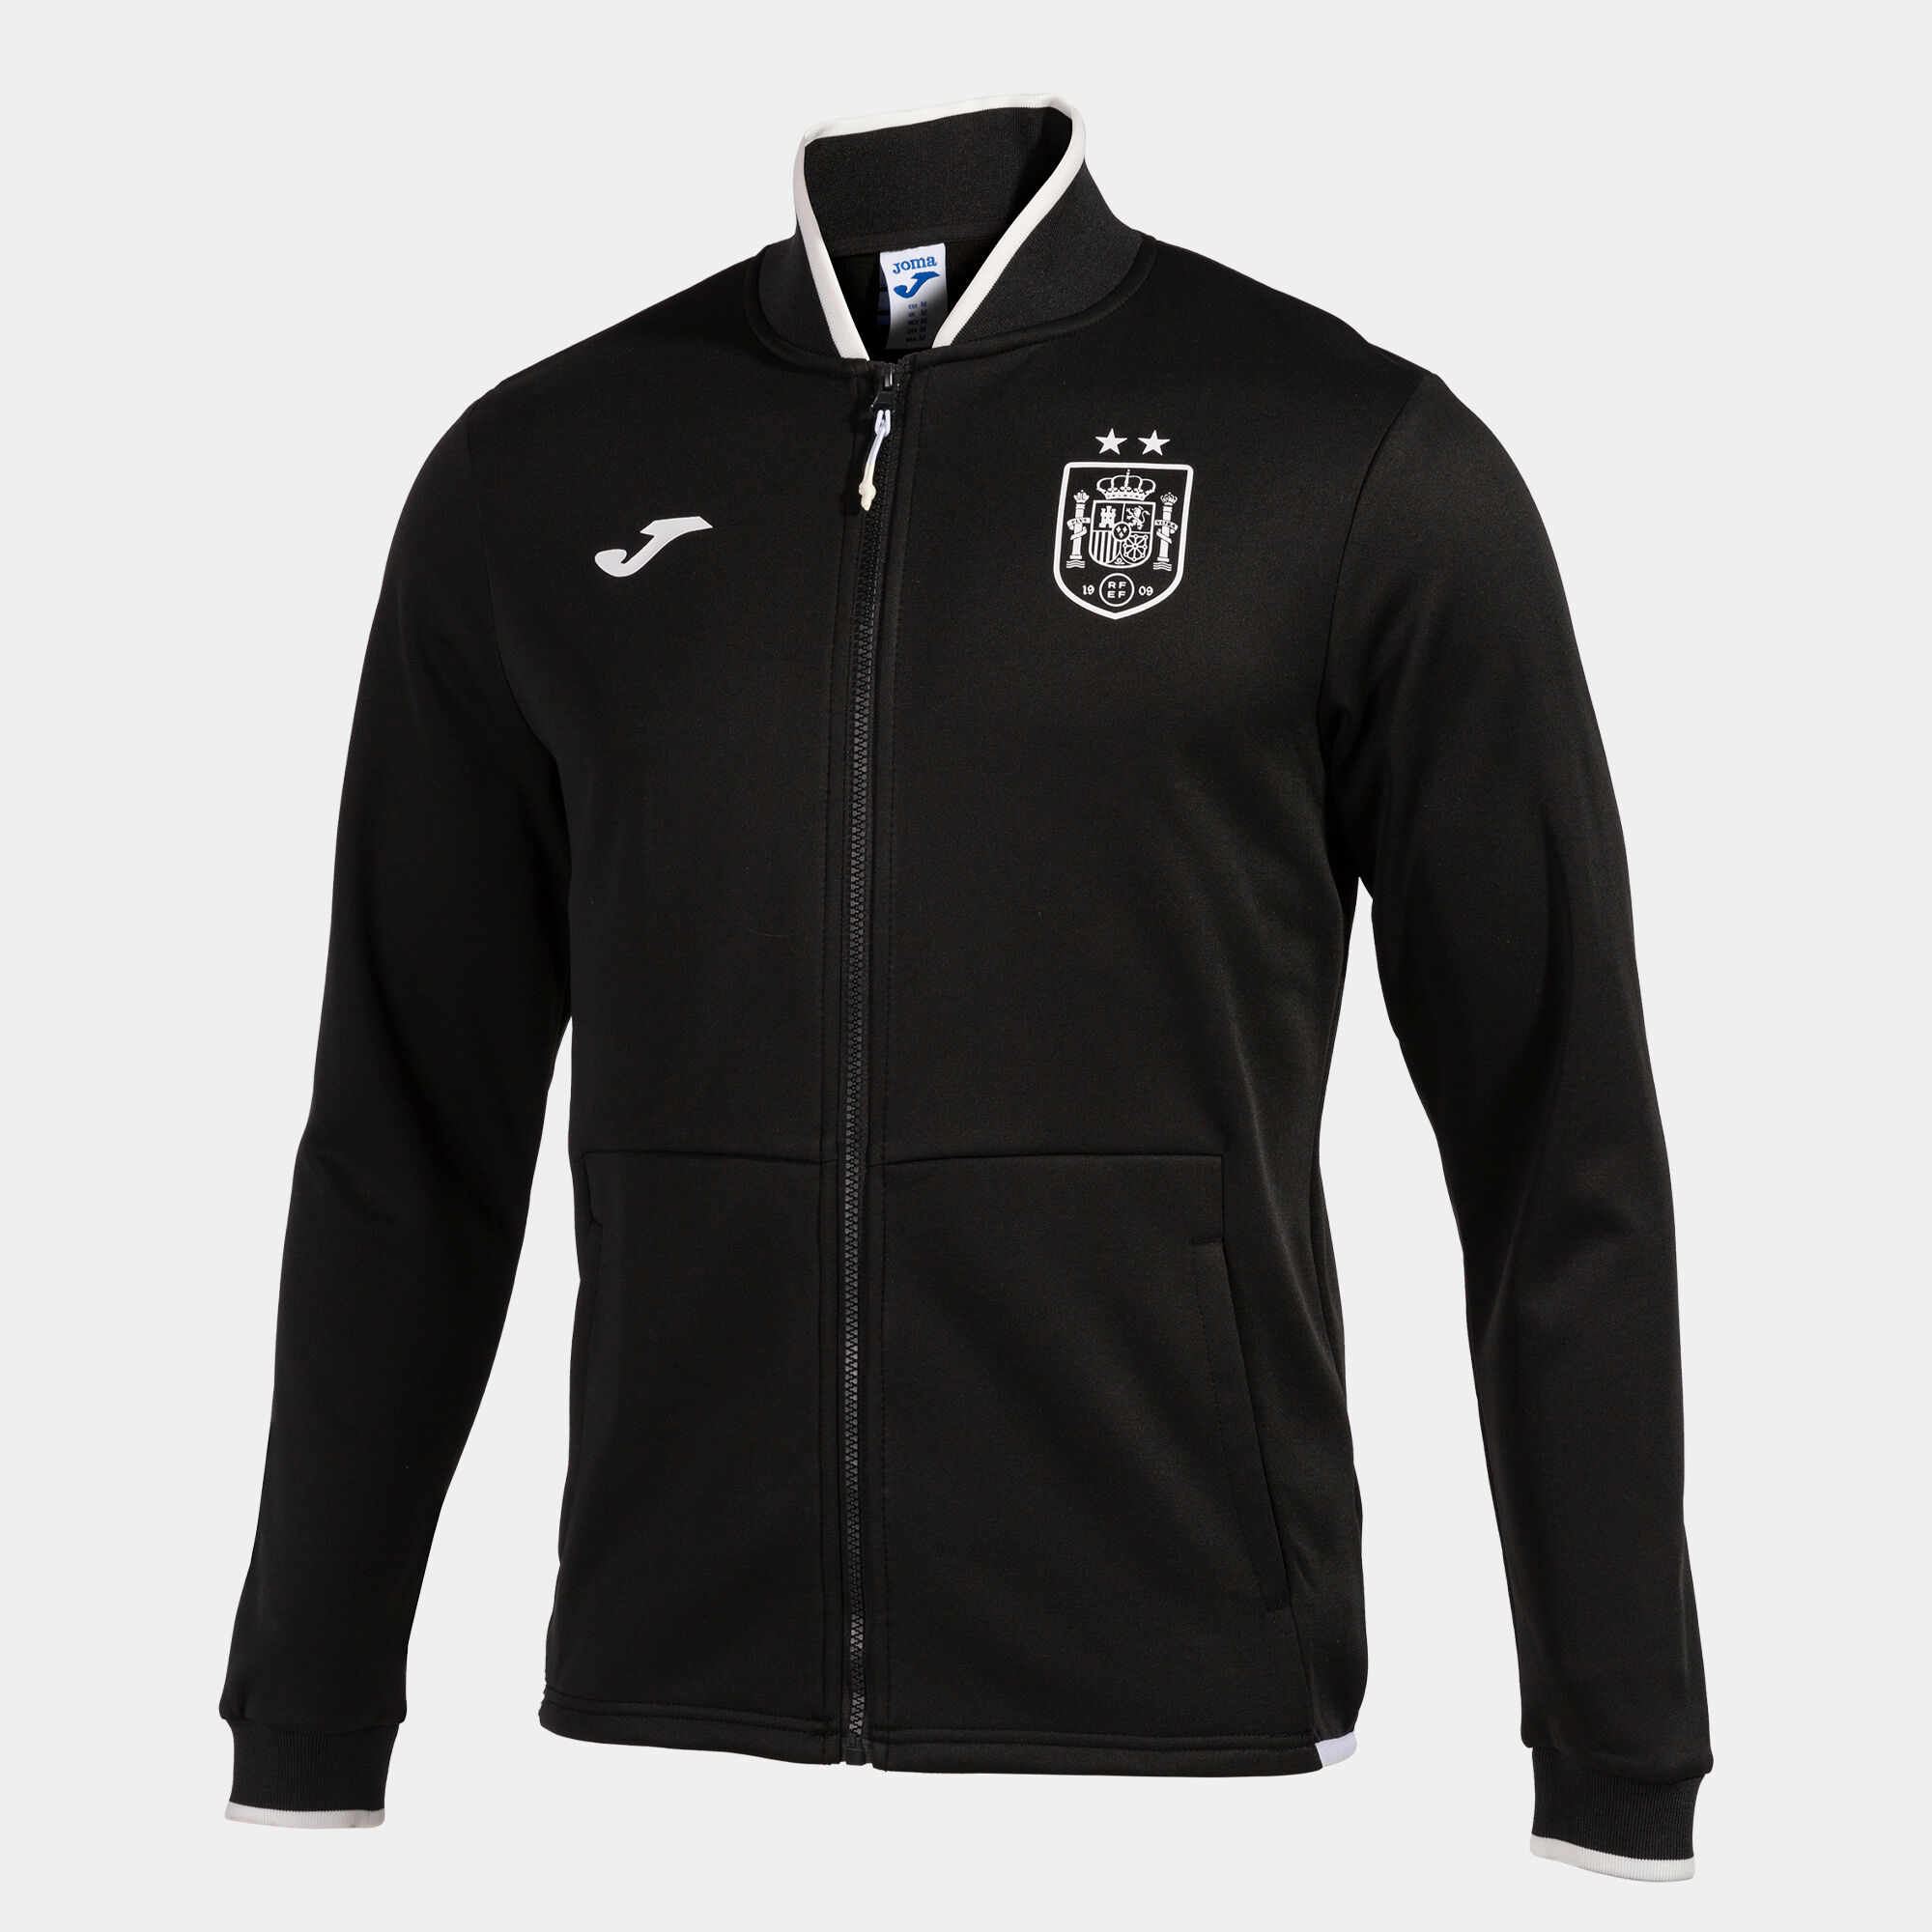 Everton FC Jacke & Hose Offizielles Merchandise Jungen Trainingsanzug 